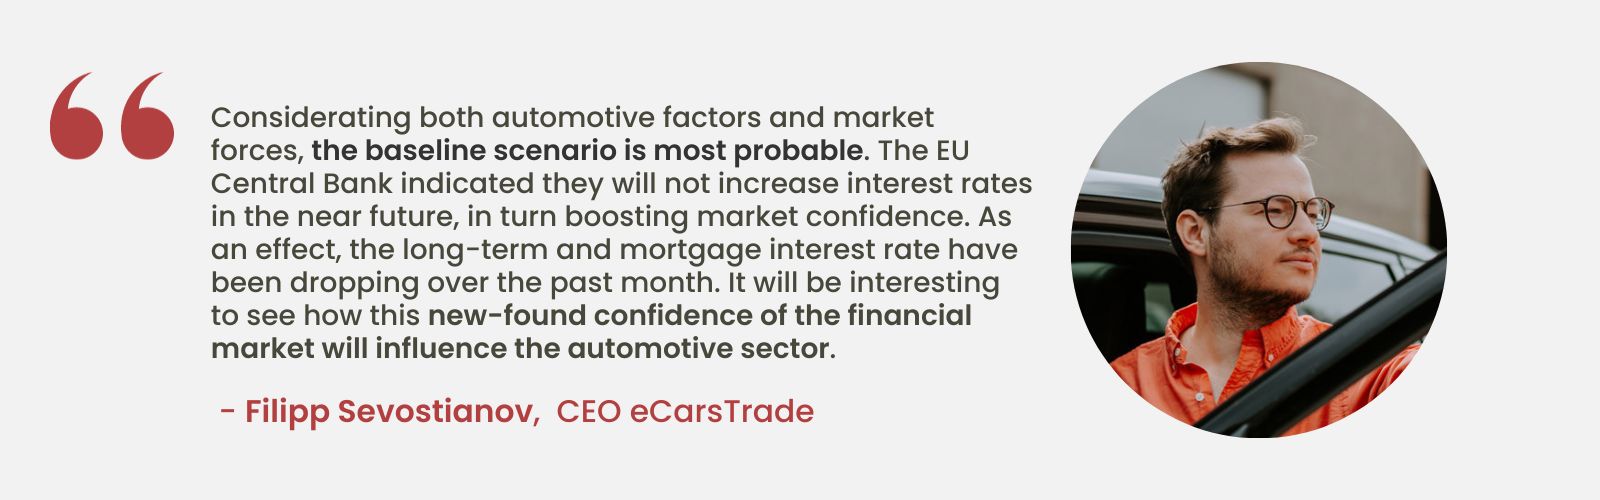 Filipp Sevostianov, az eCarsTrade vezérigazgatójának szakértői elemzése a stabil uniós kamatlábak piaci bizalomra gyakorolt hatásáról és az autóiparra gyakorolt lehetséges hatásokról tárgyal.